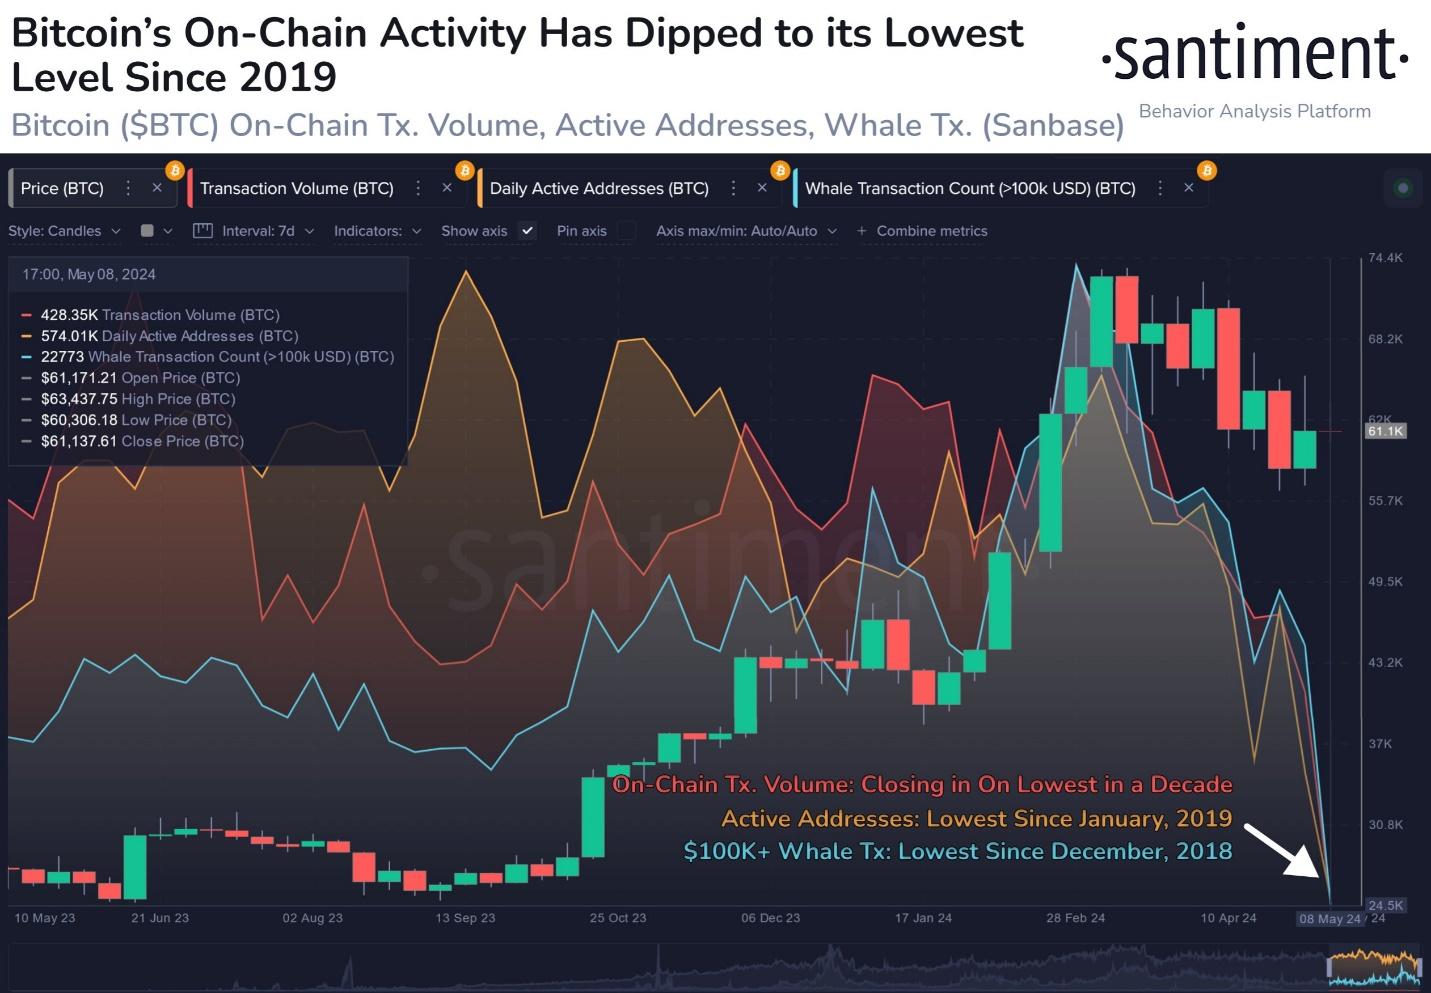  la actividad On-Chain de Bitcoin ha caído a mínimos históricos en los dos meses posteriores a su máximo histórico.